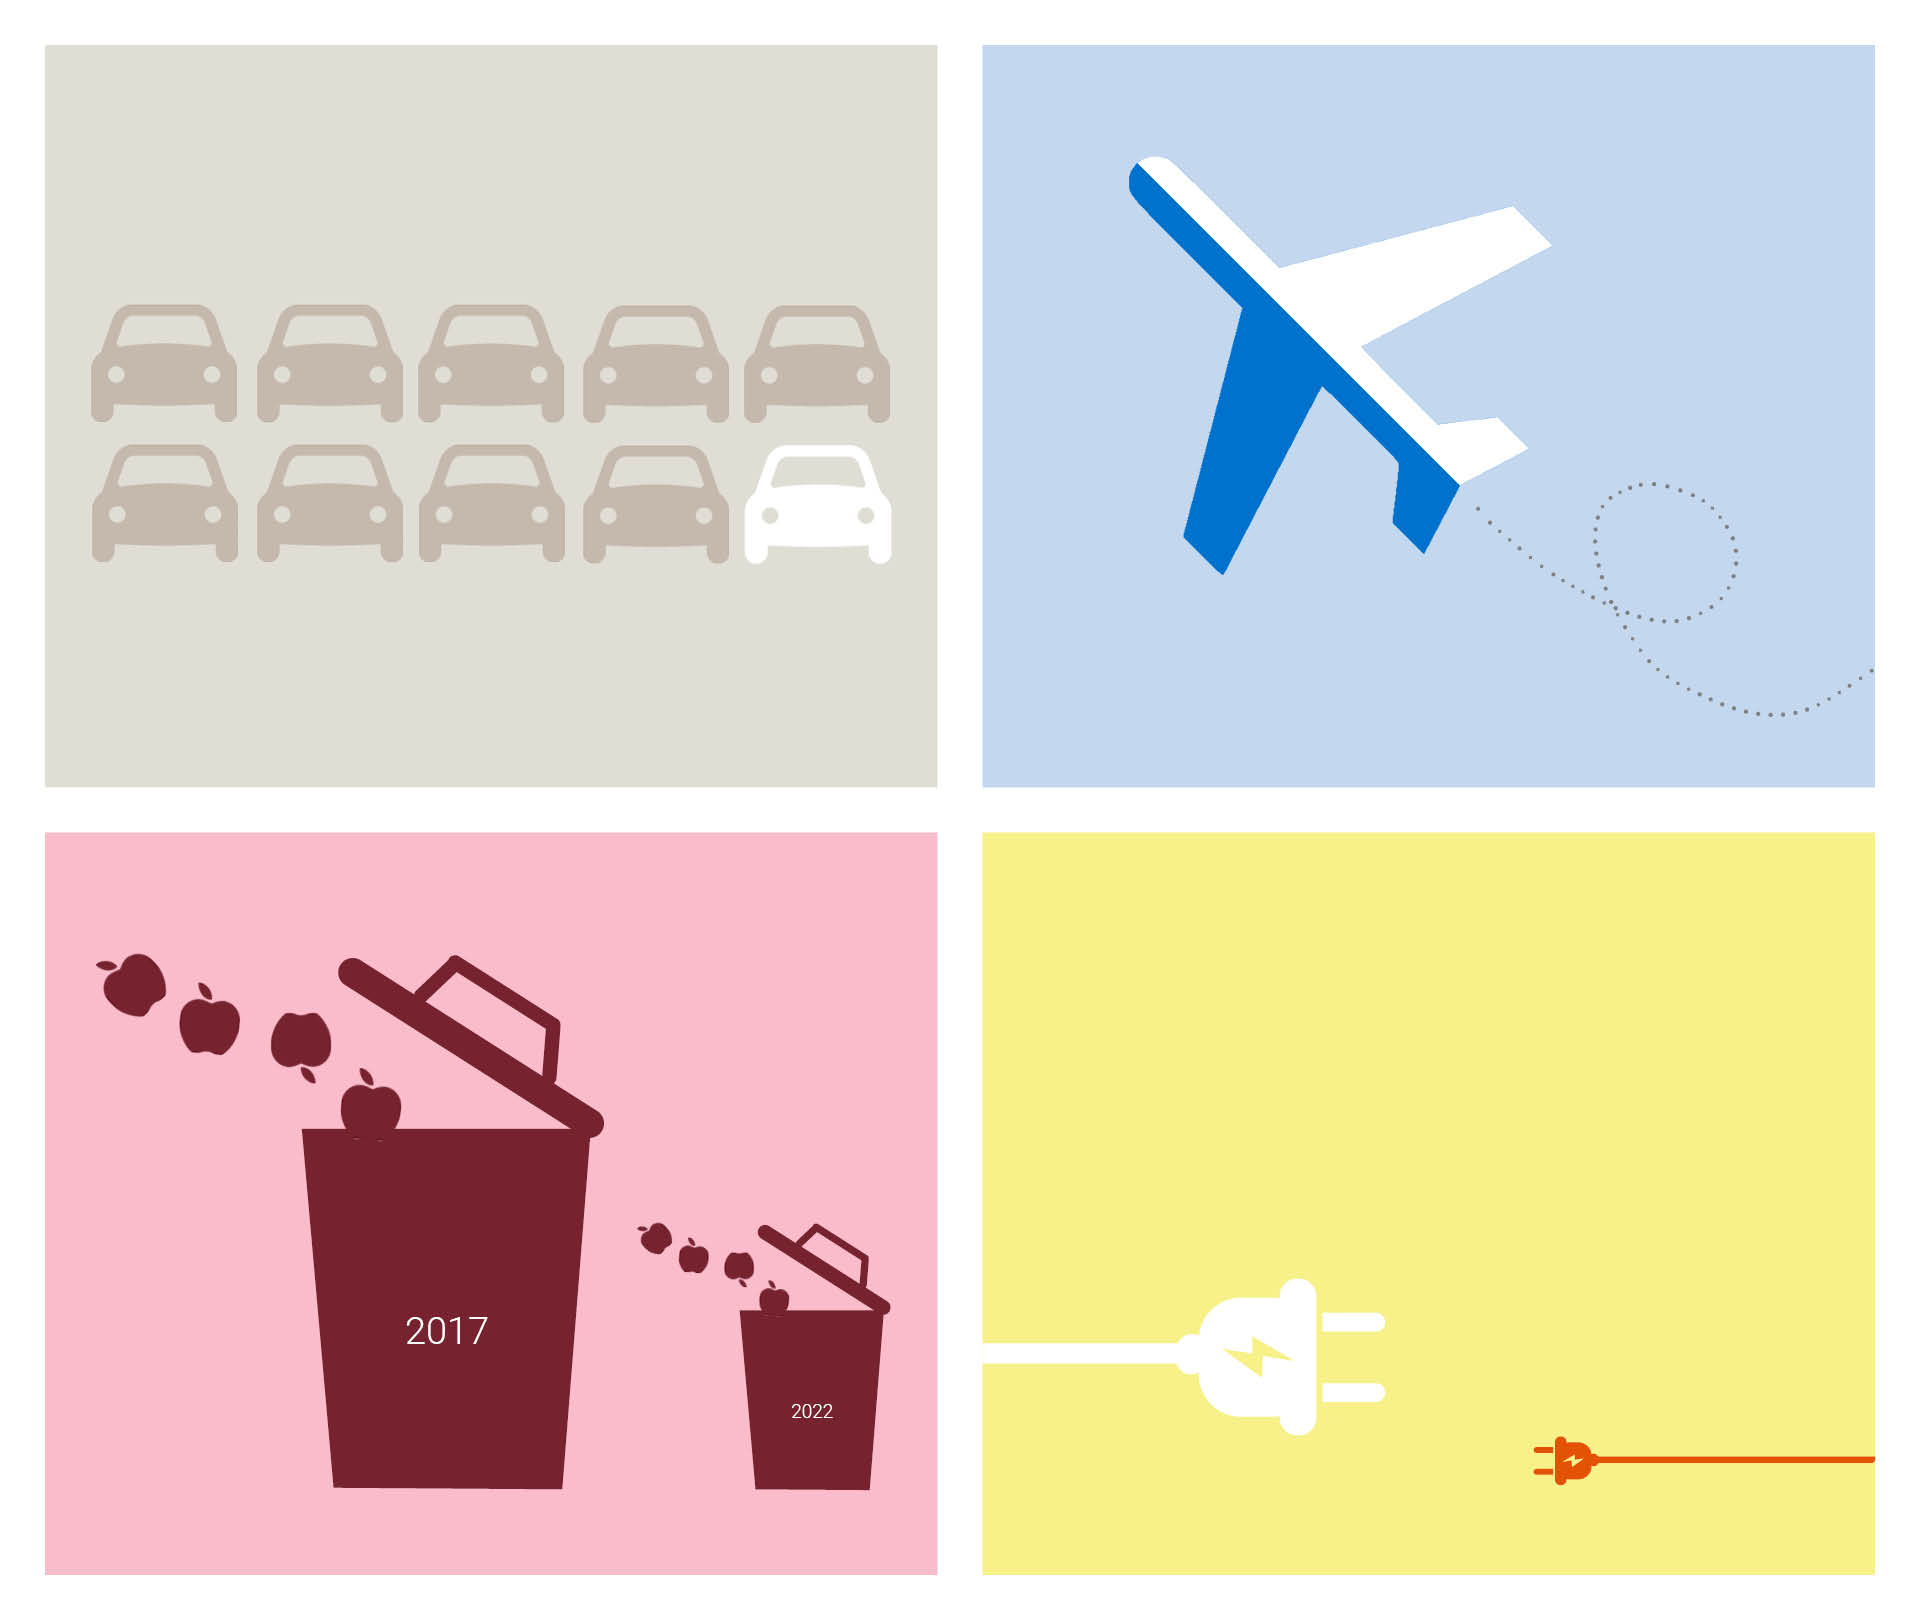 Illustrationer som föreställer bilar, flyg, återvinningskärl och elkontakter. Illustrationerna visar att utsläppen blivit mindre sedan 2017 genom att illustrationerna har olika storlek och färg.